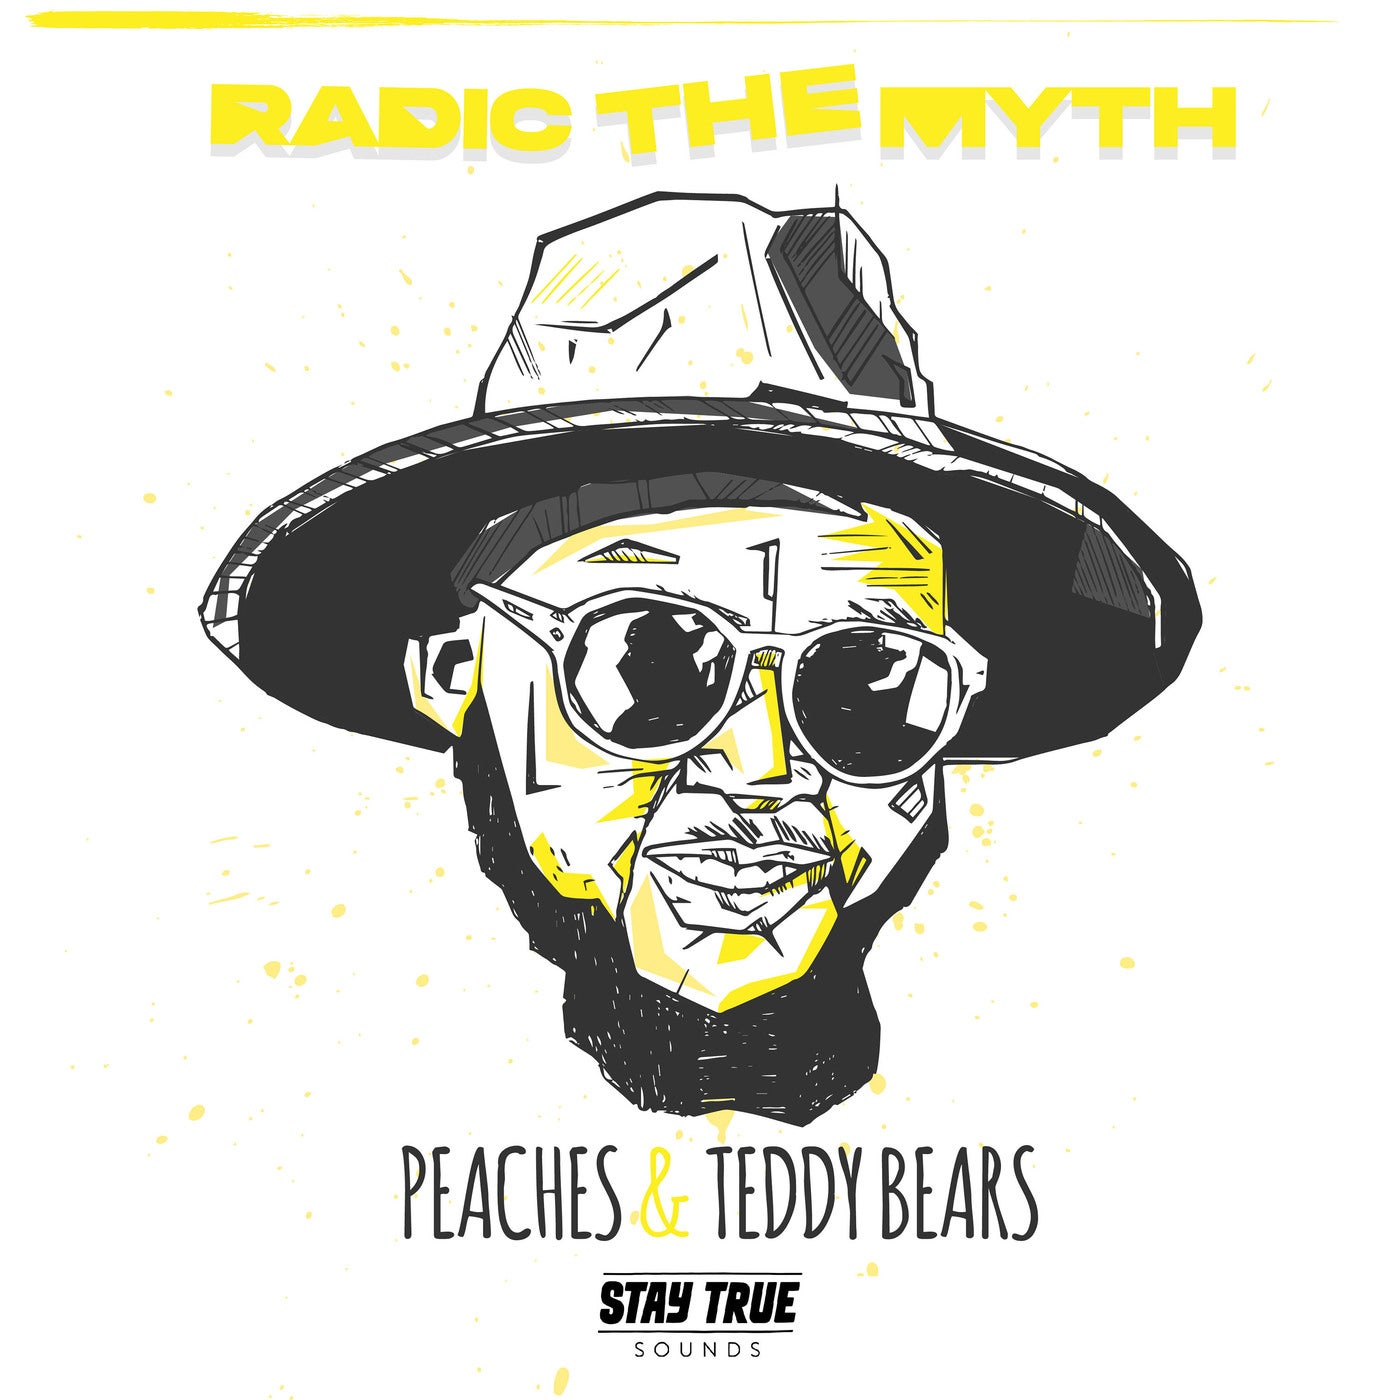 Peaches & Teddy Bears